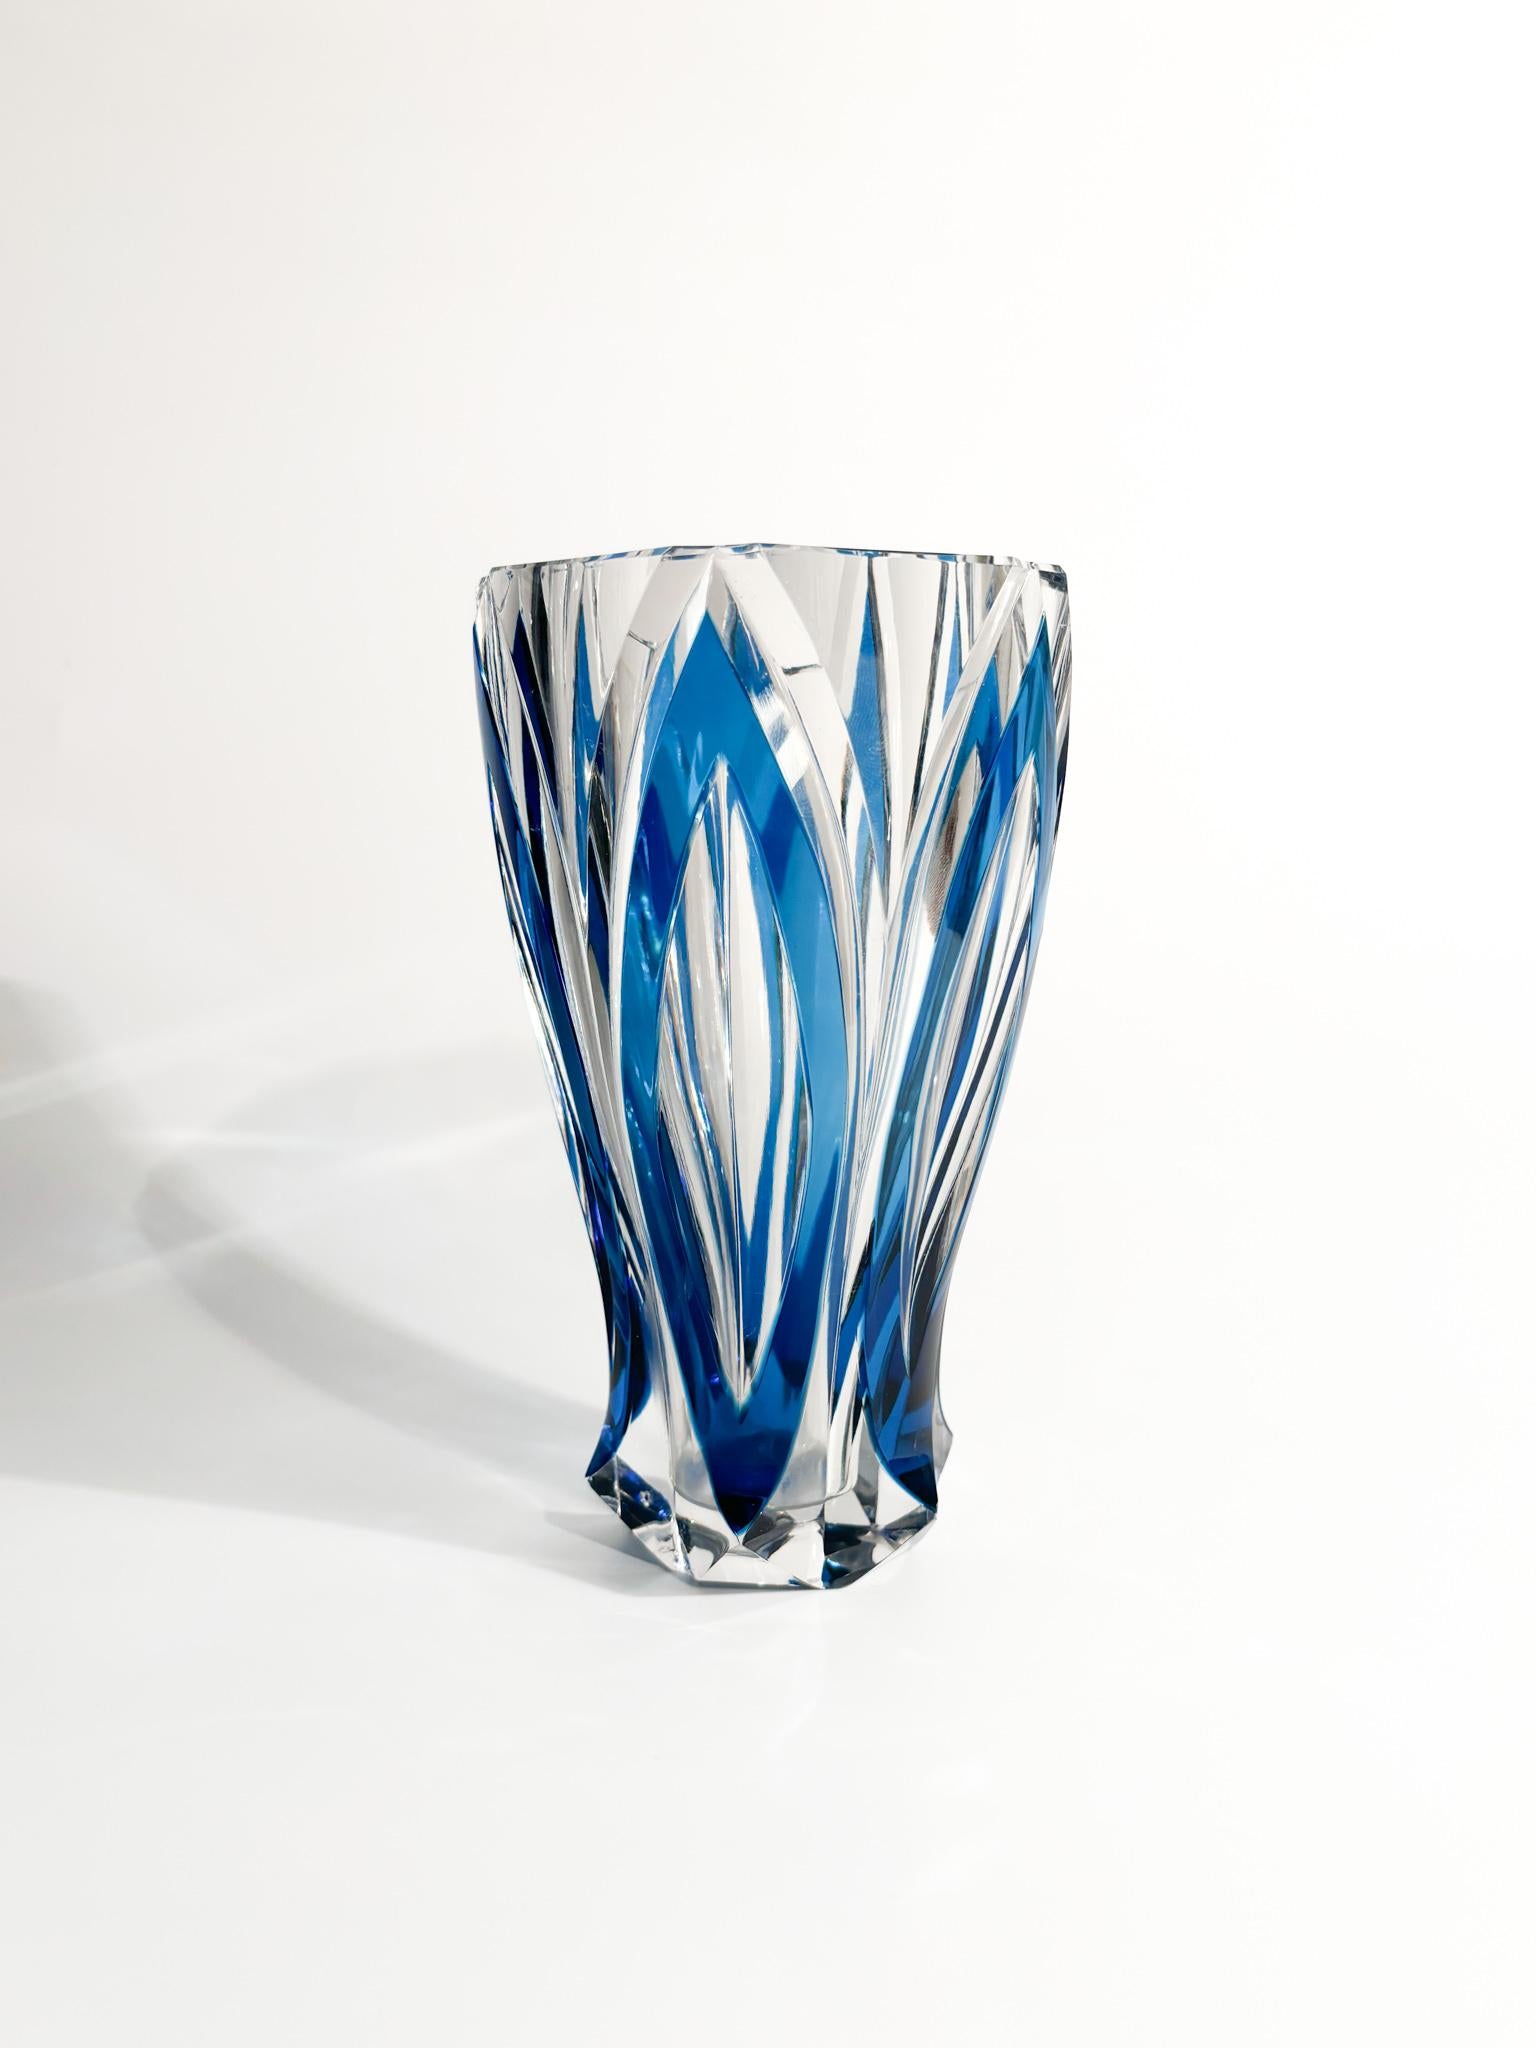 Vase en cristal français bleu, fabriqué par Saint-Louis dans les années 1940

Ø 10,5 cm h 17,5 cm

Saint-Louis est un fabricant français de cristal réputé pour ses articles en cristal de haute qualité. Fondée en 1586, elle a une riche histoire de